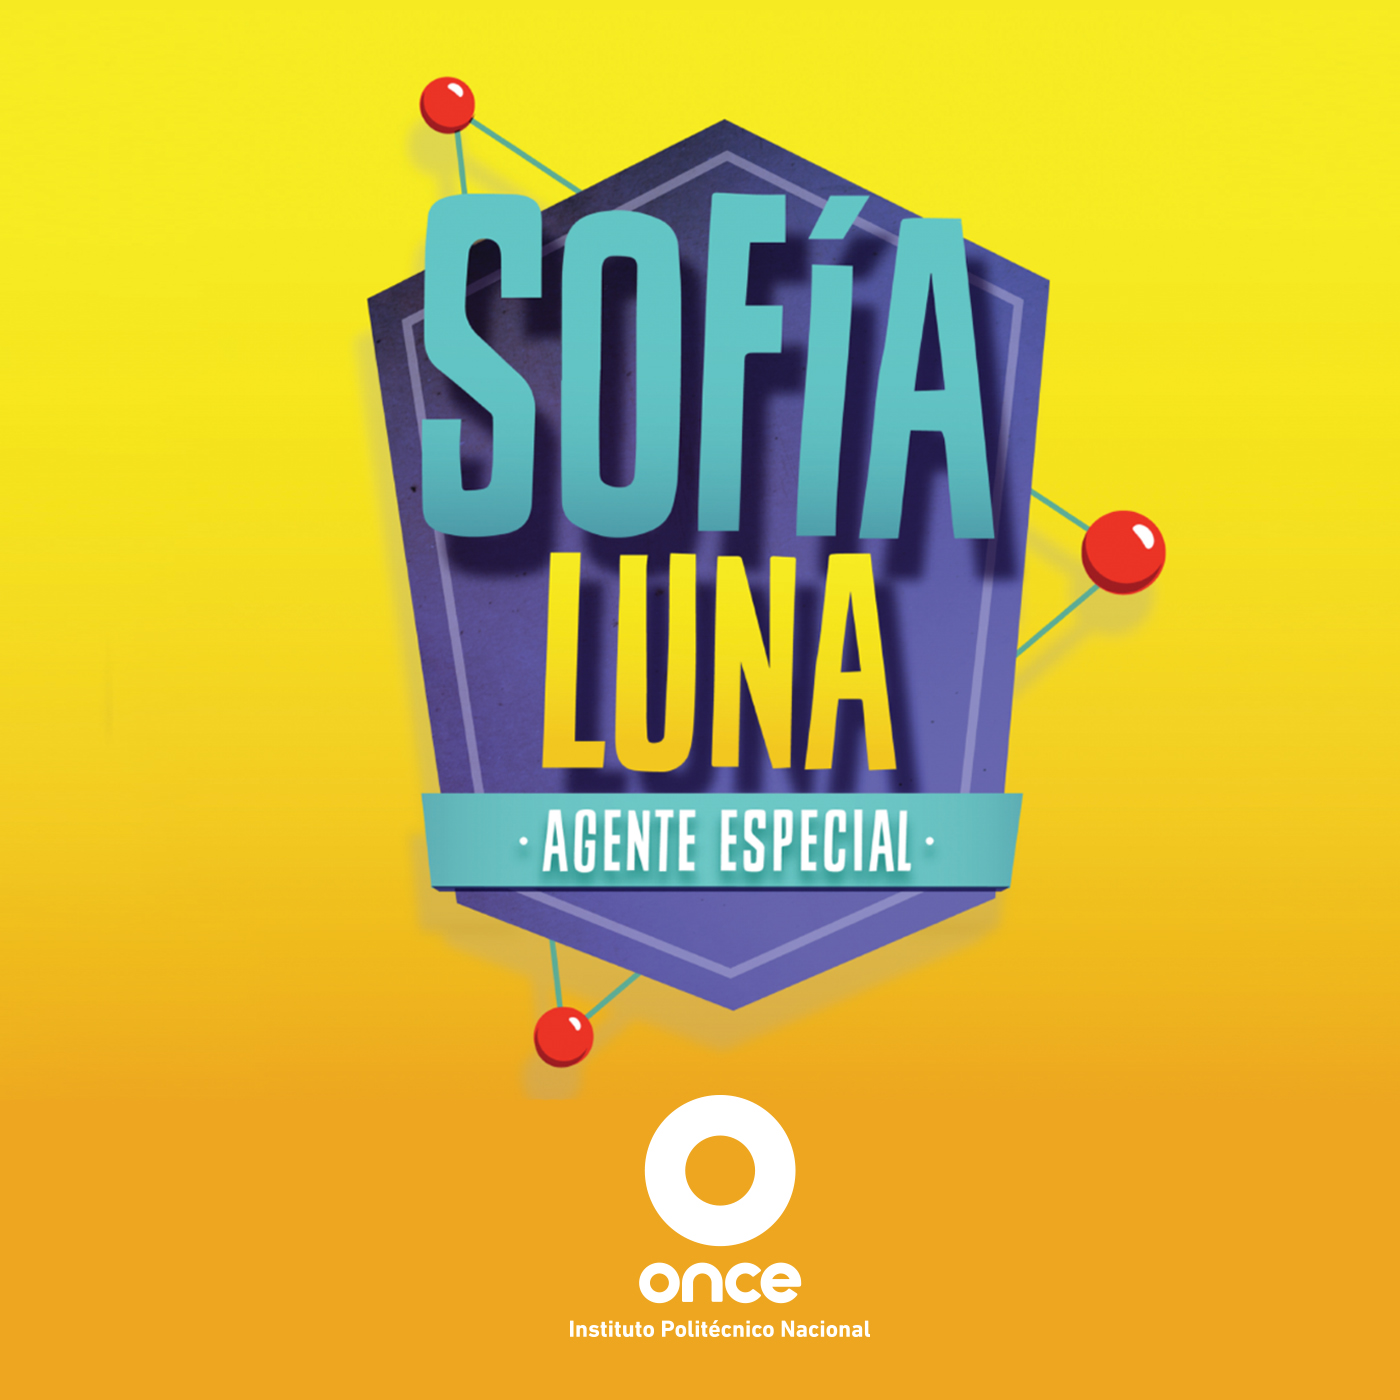 Sofía Luna